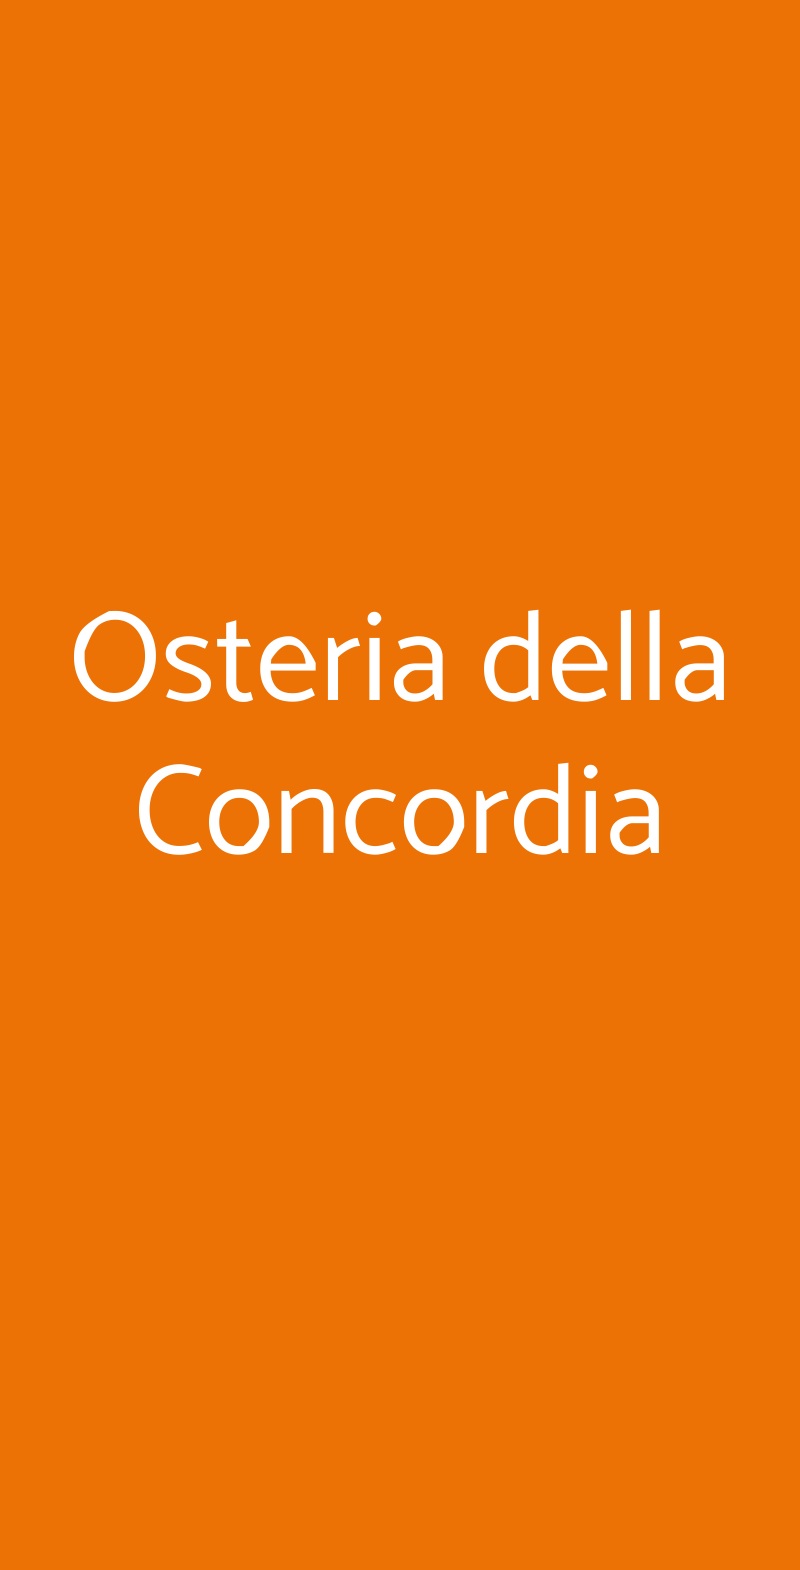 Osteria della Concordia Milano menù 1 pagina